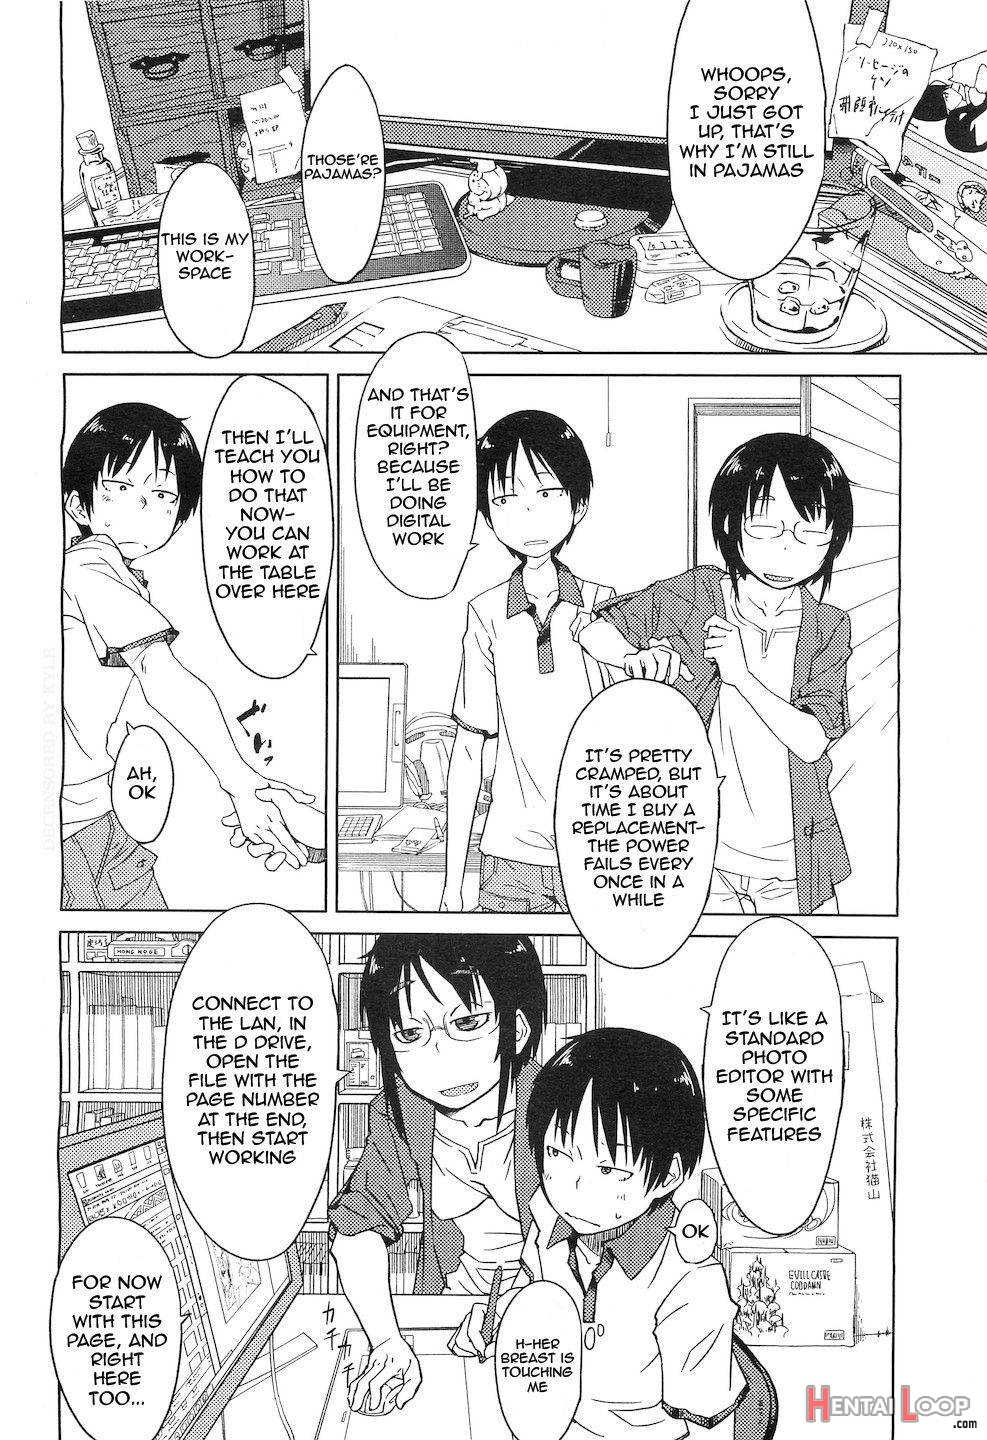 Shiryou ja Shikatanai ne? page 2